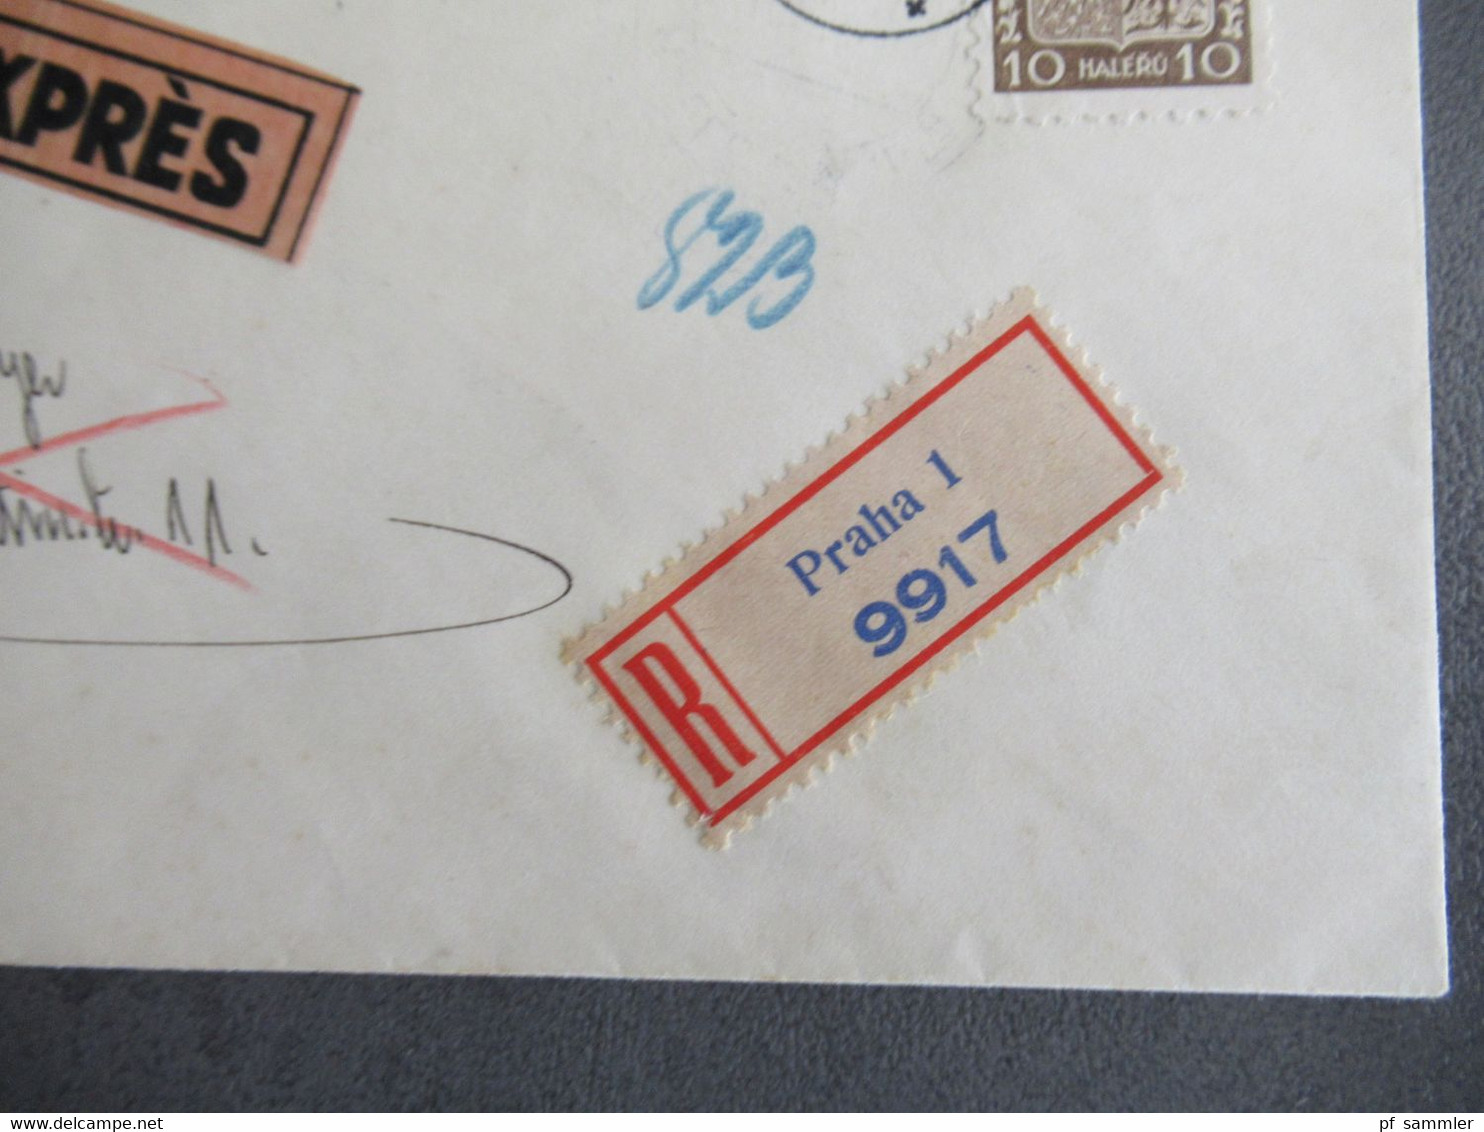 Böhmen Und Mähren 16.8.1939 Früher Beleg MiF Mit CSSR Marke Einschreiben Expres Ank. Stempel Halle Fernsprechamt - Cartas & Documentos